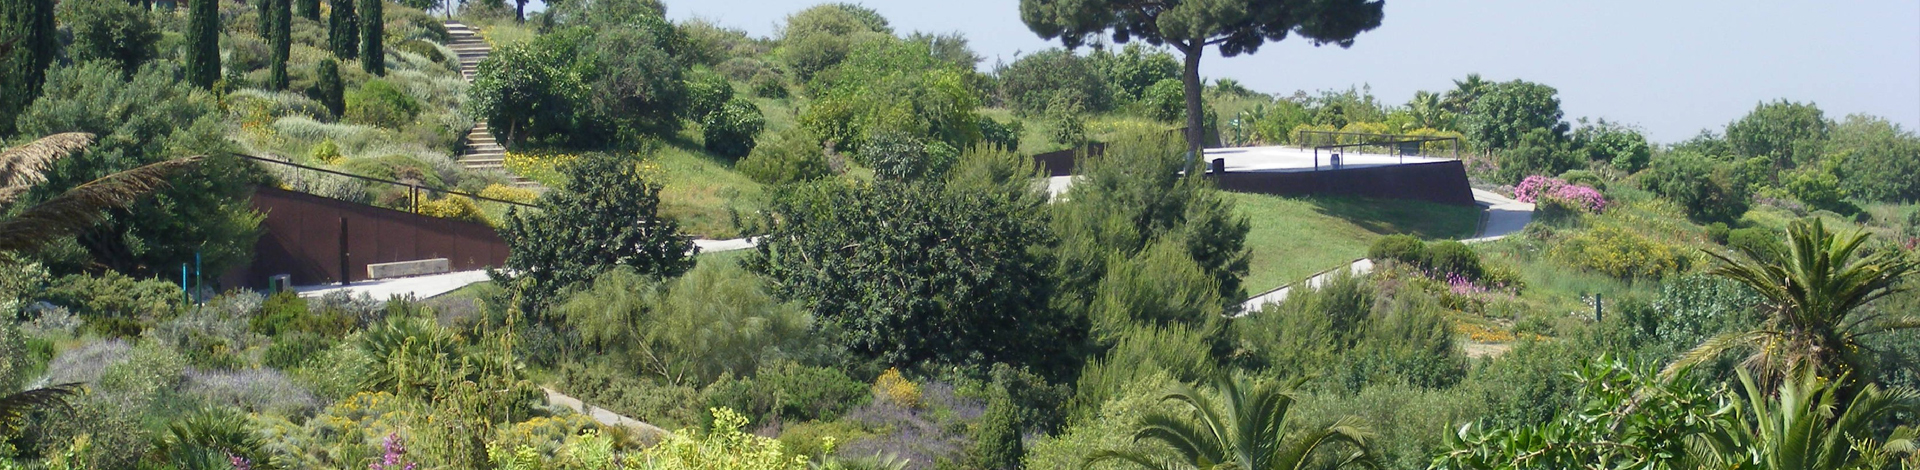 Plantes característiques de la regió Mediterrània del Jardí Botànic EN